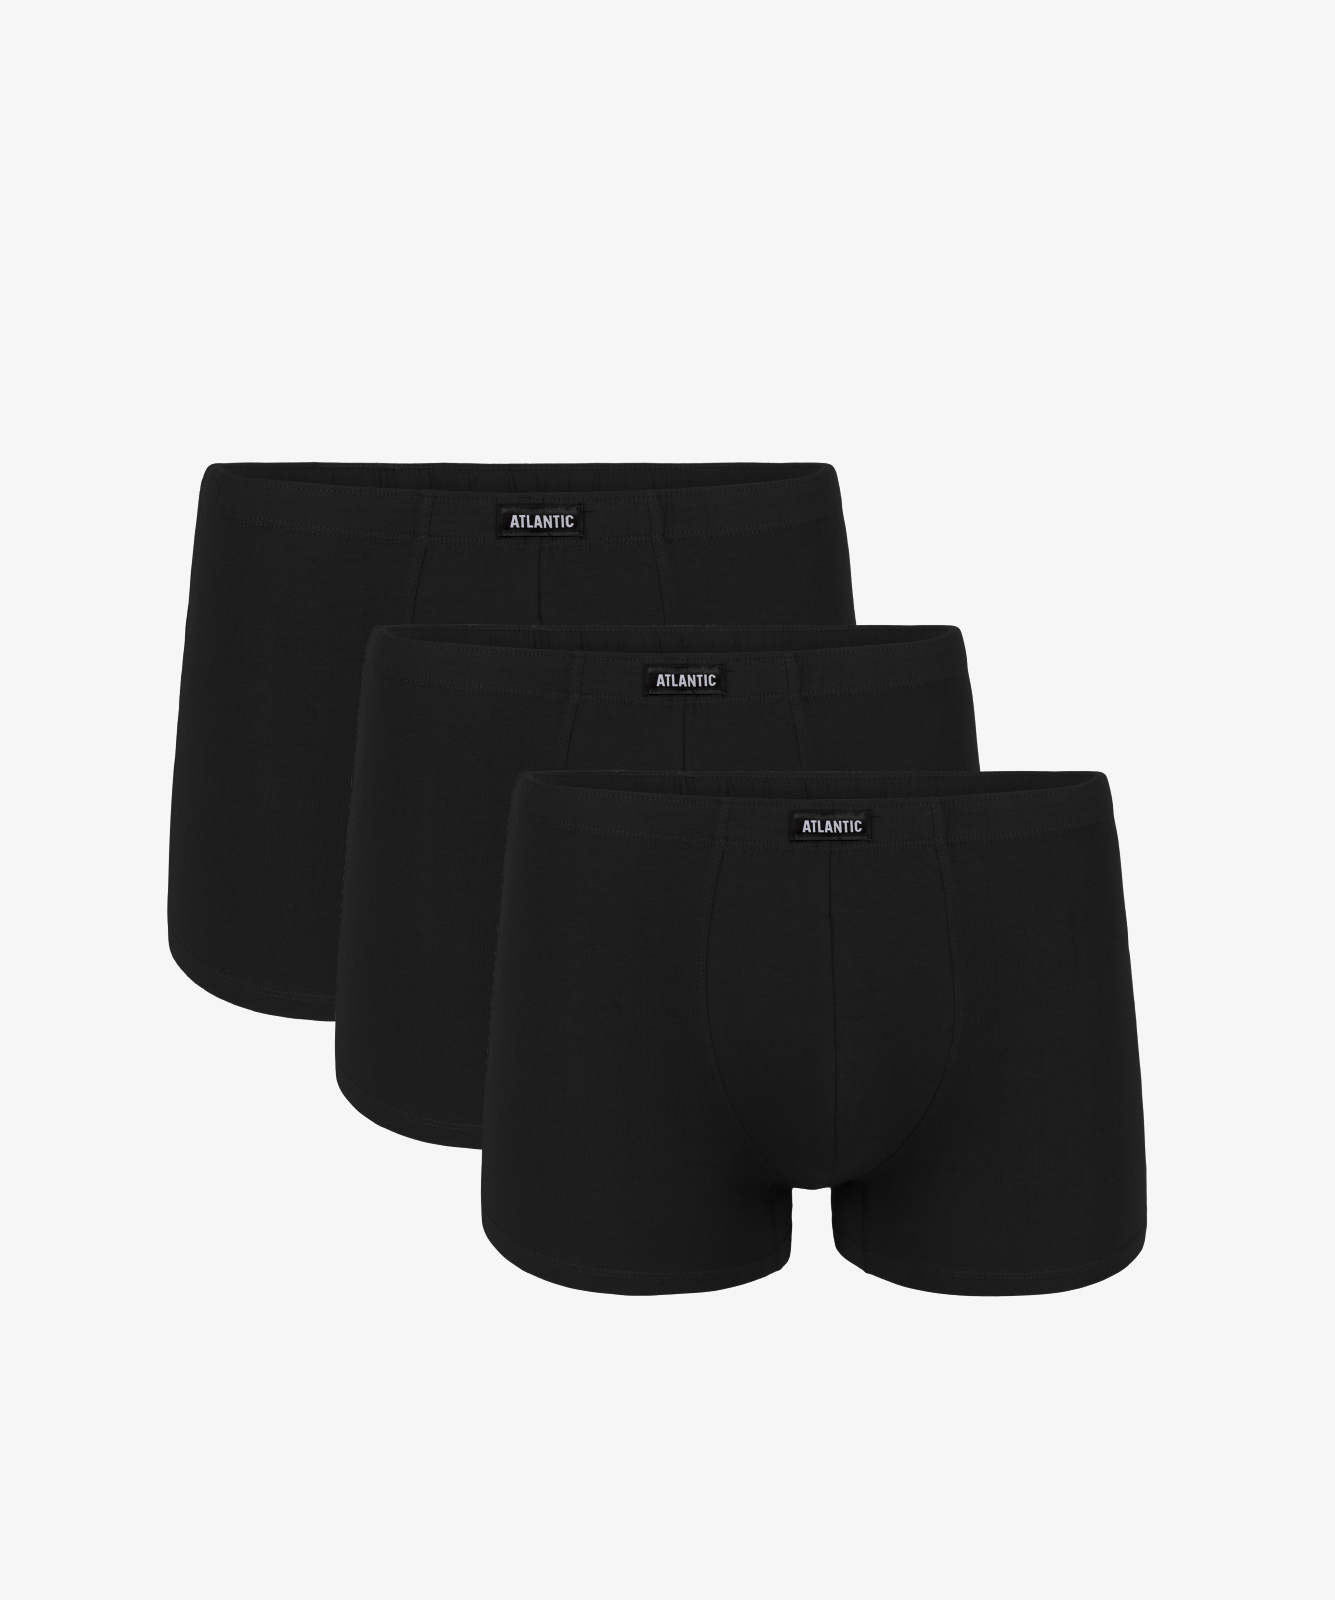 Мужские трусы шорты Atlantic, набор из 3 шт., хлопок, черные, Basic 3BMH-007